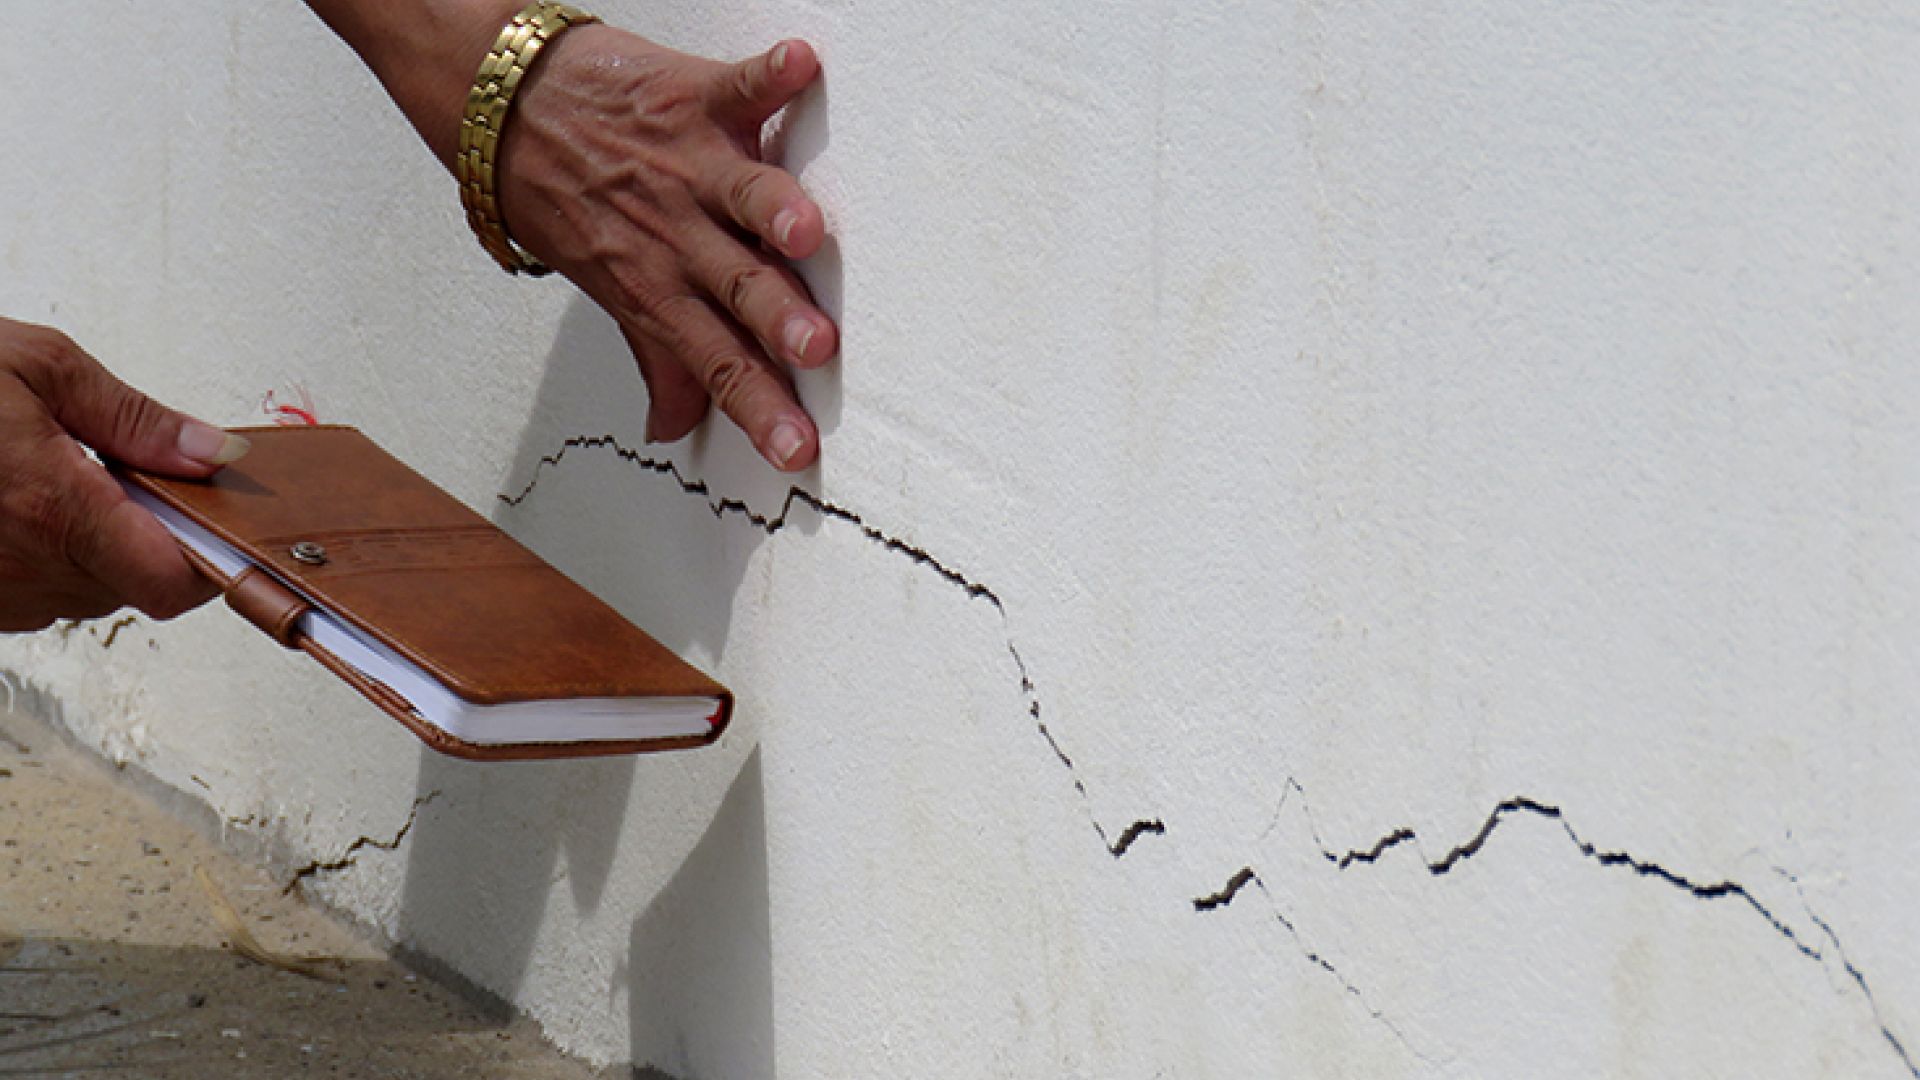 Chi phí dành cho việc chống thấm tường ngoài sẽ thấp hơn việc sửa chữa những hậu quả mà nó gây ra